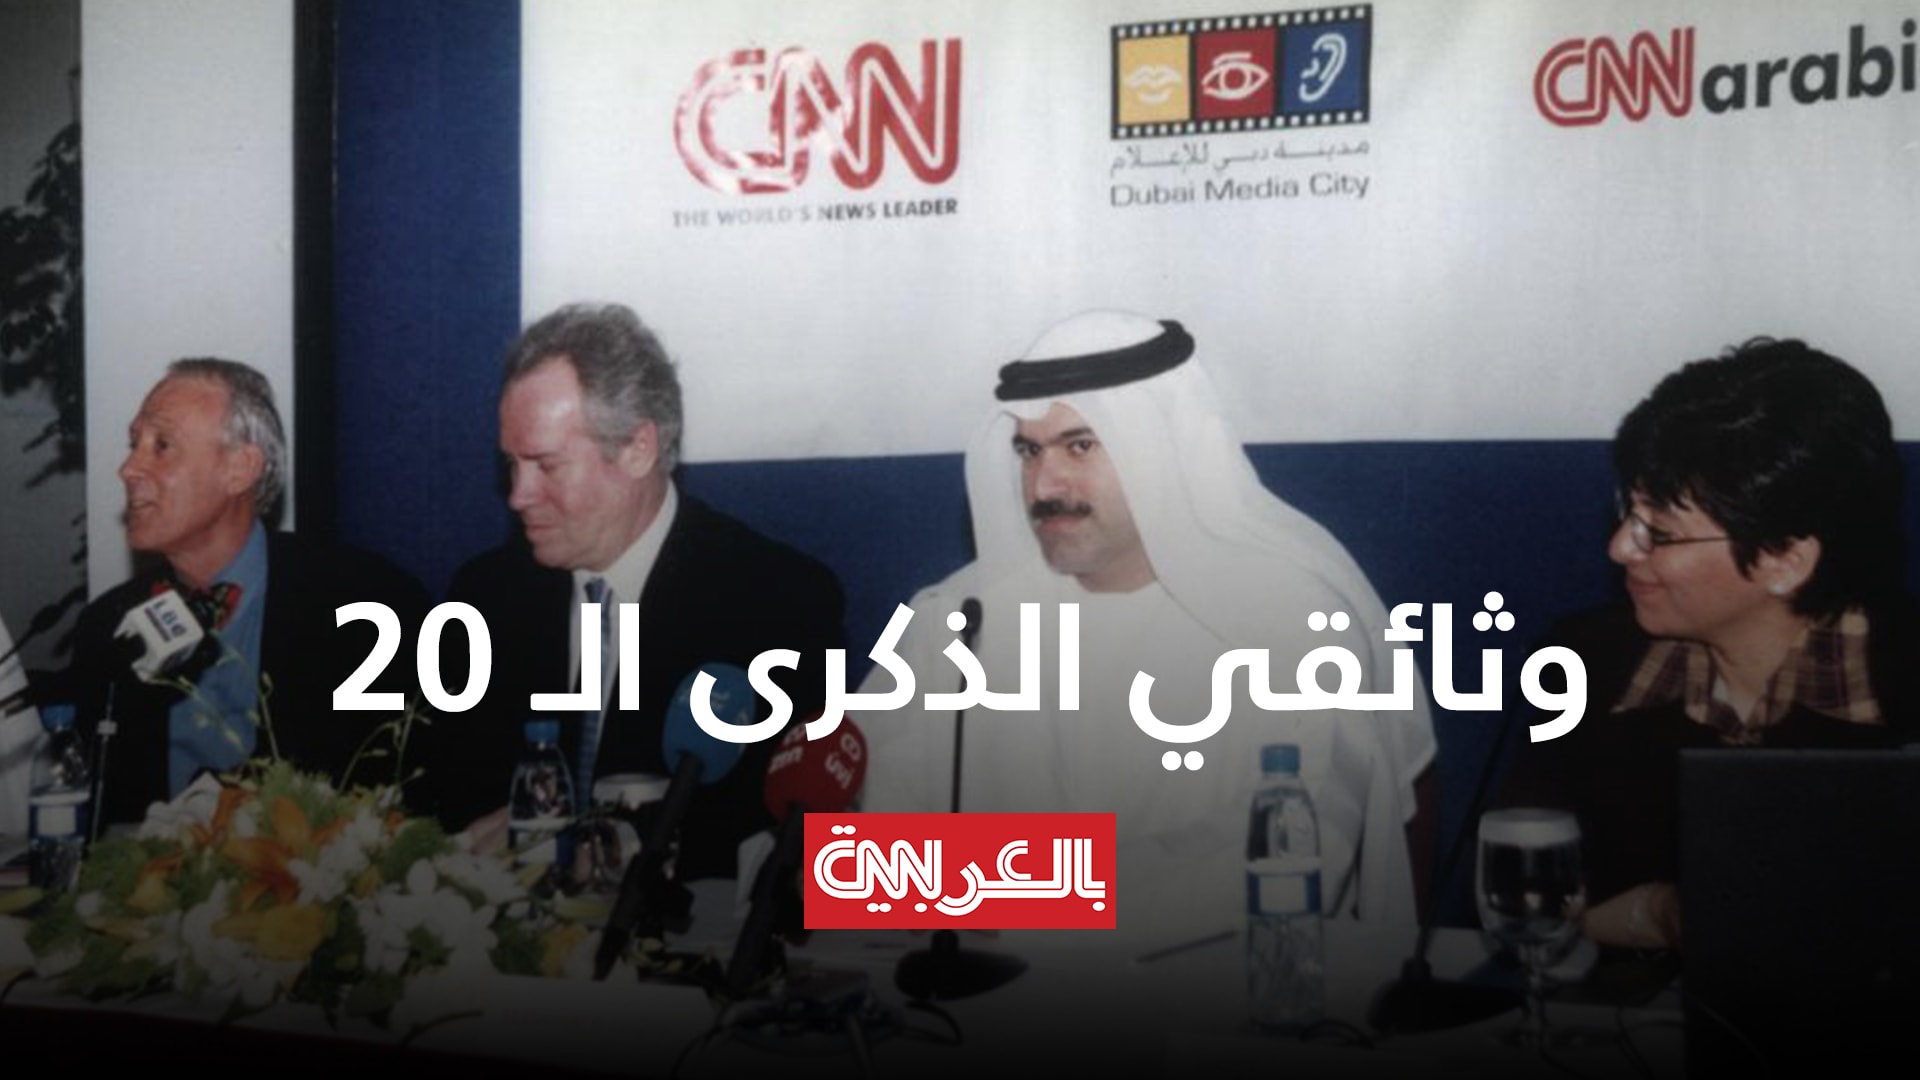 بعد عشرين عاما على انطلاق موقع CNN بالعربية... هذه قصتنا